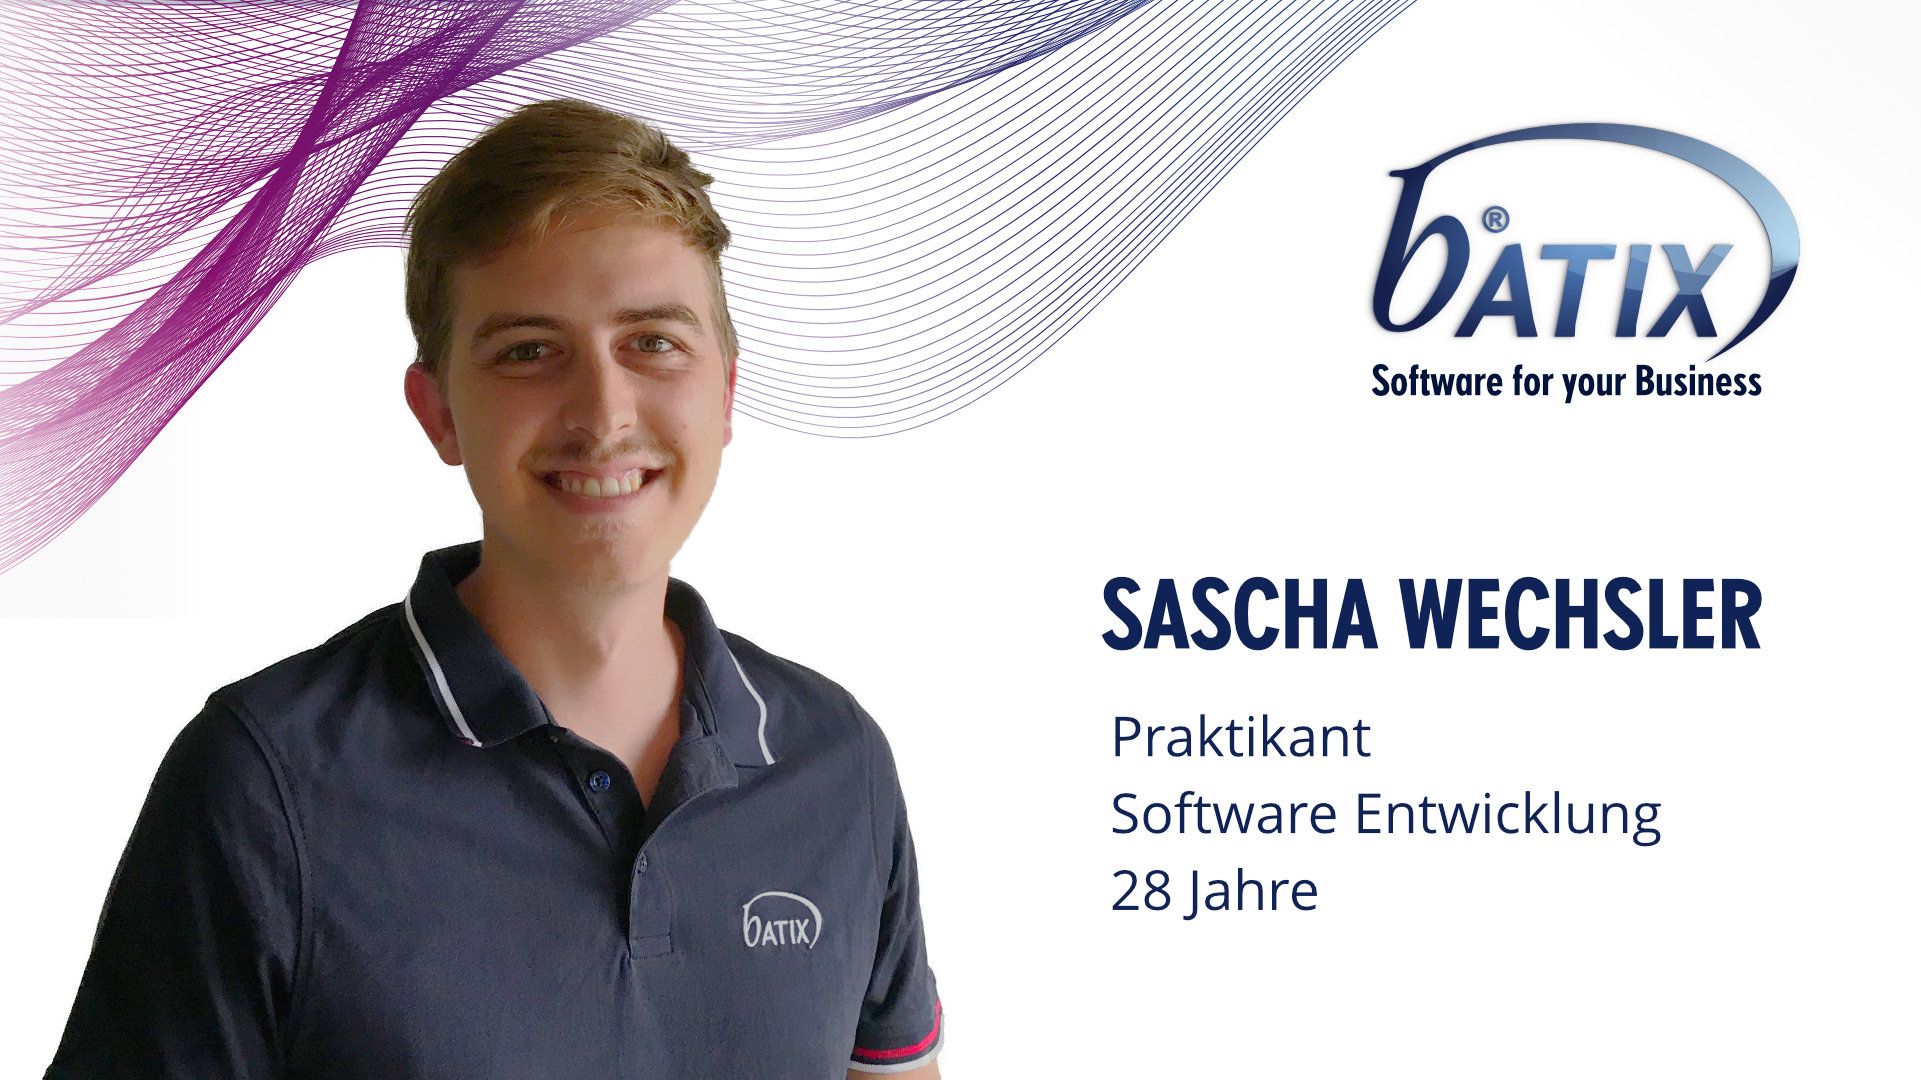 Batix Team Sascha Wechsler